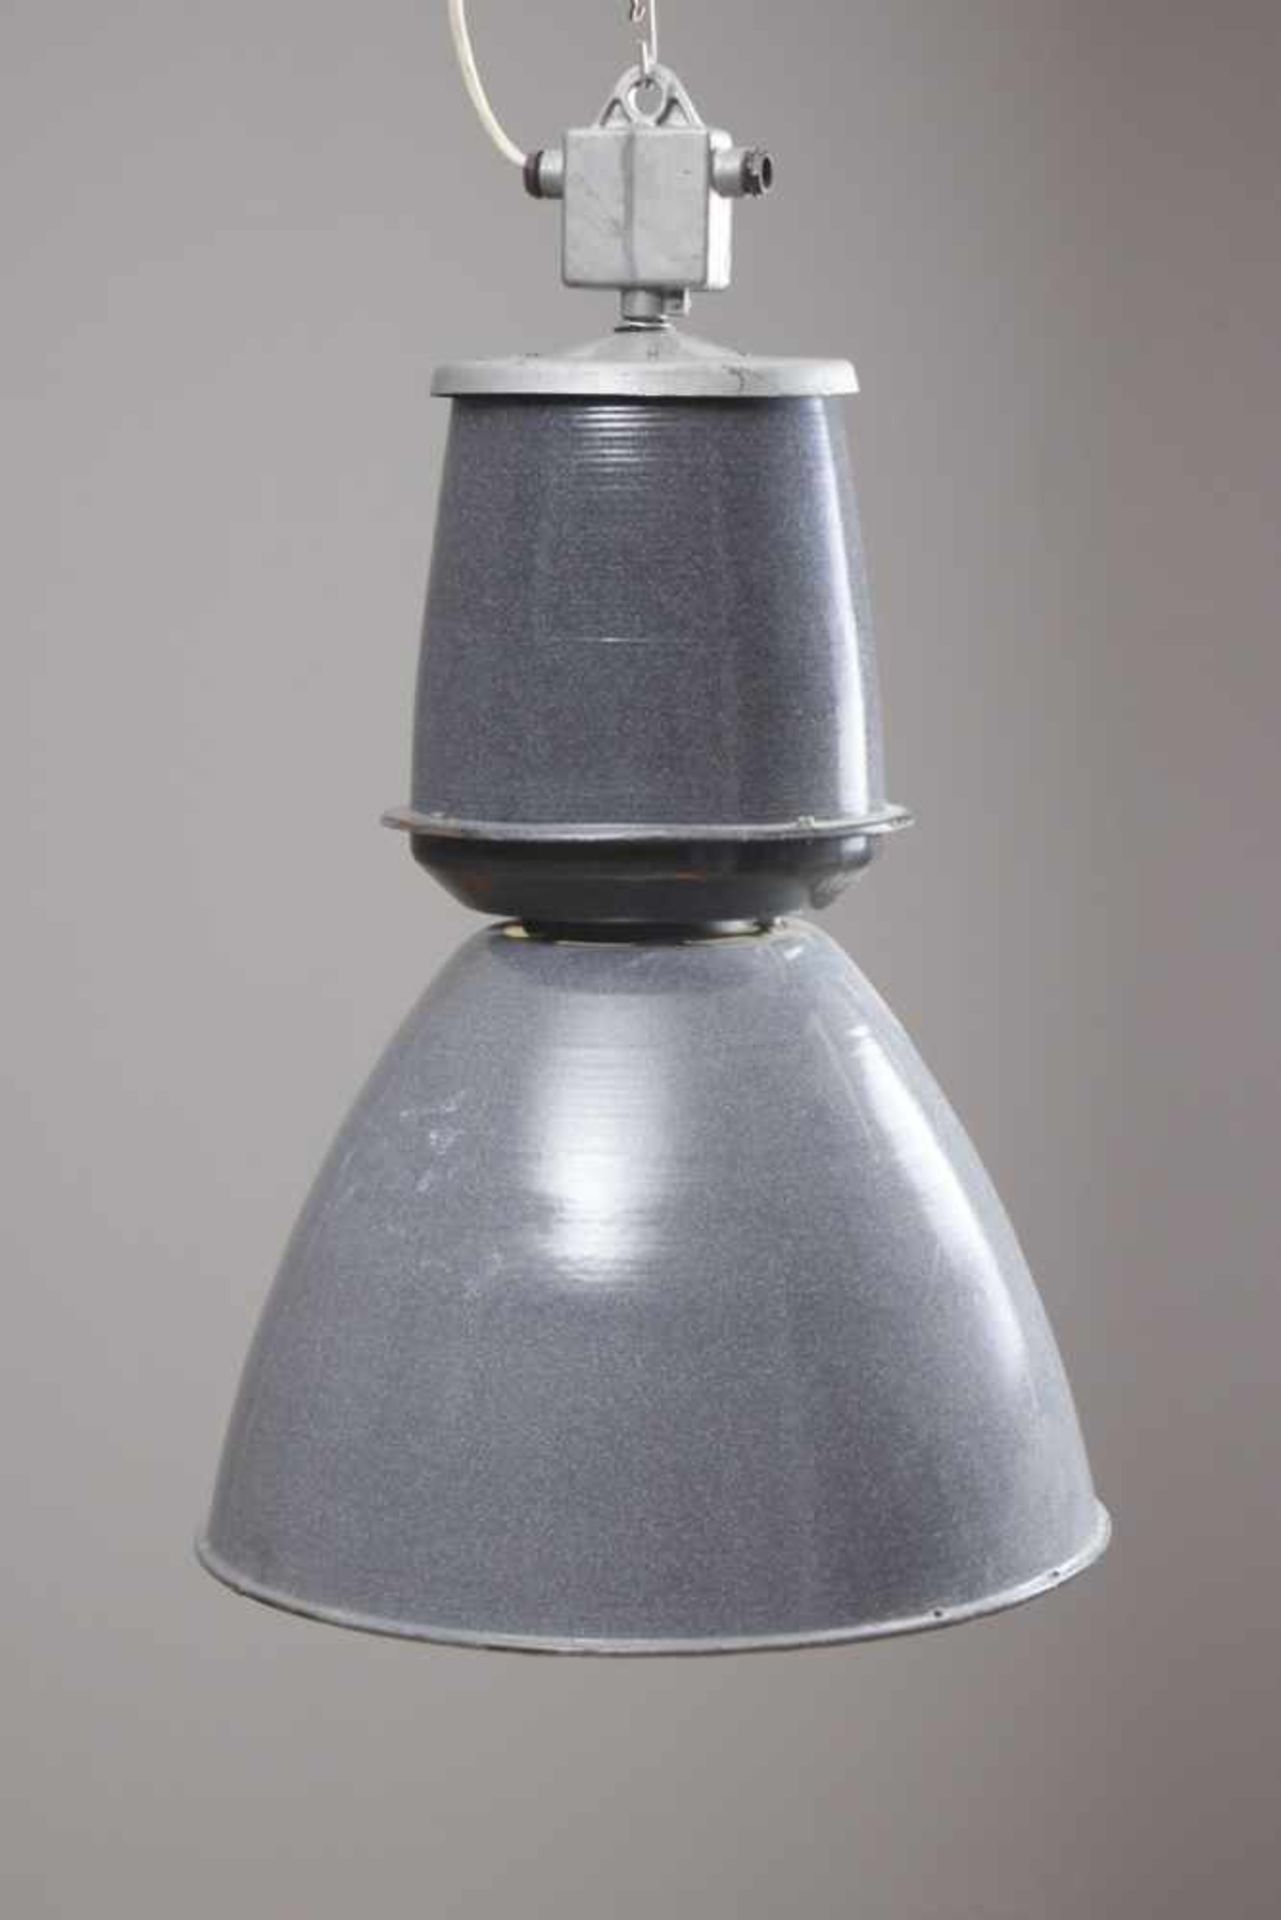 Große Industrie-Lampe Metall, grau pulverbeschichtet, wohl um 1960, auf Plakette bezeichnet ¨Typ